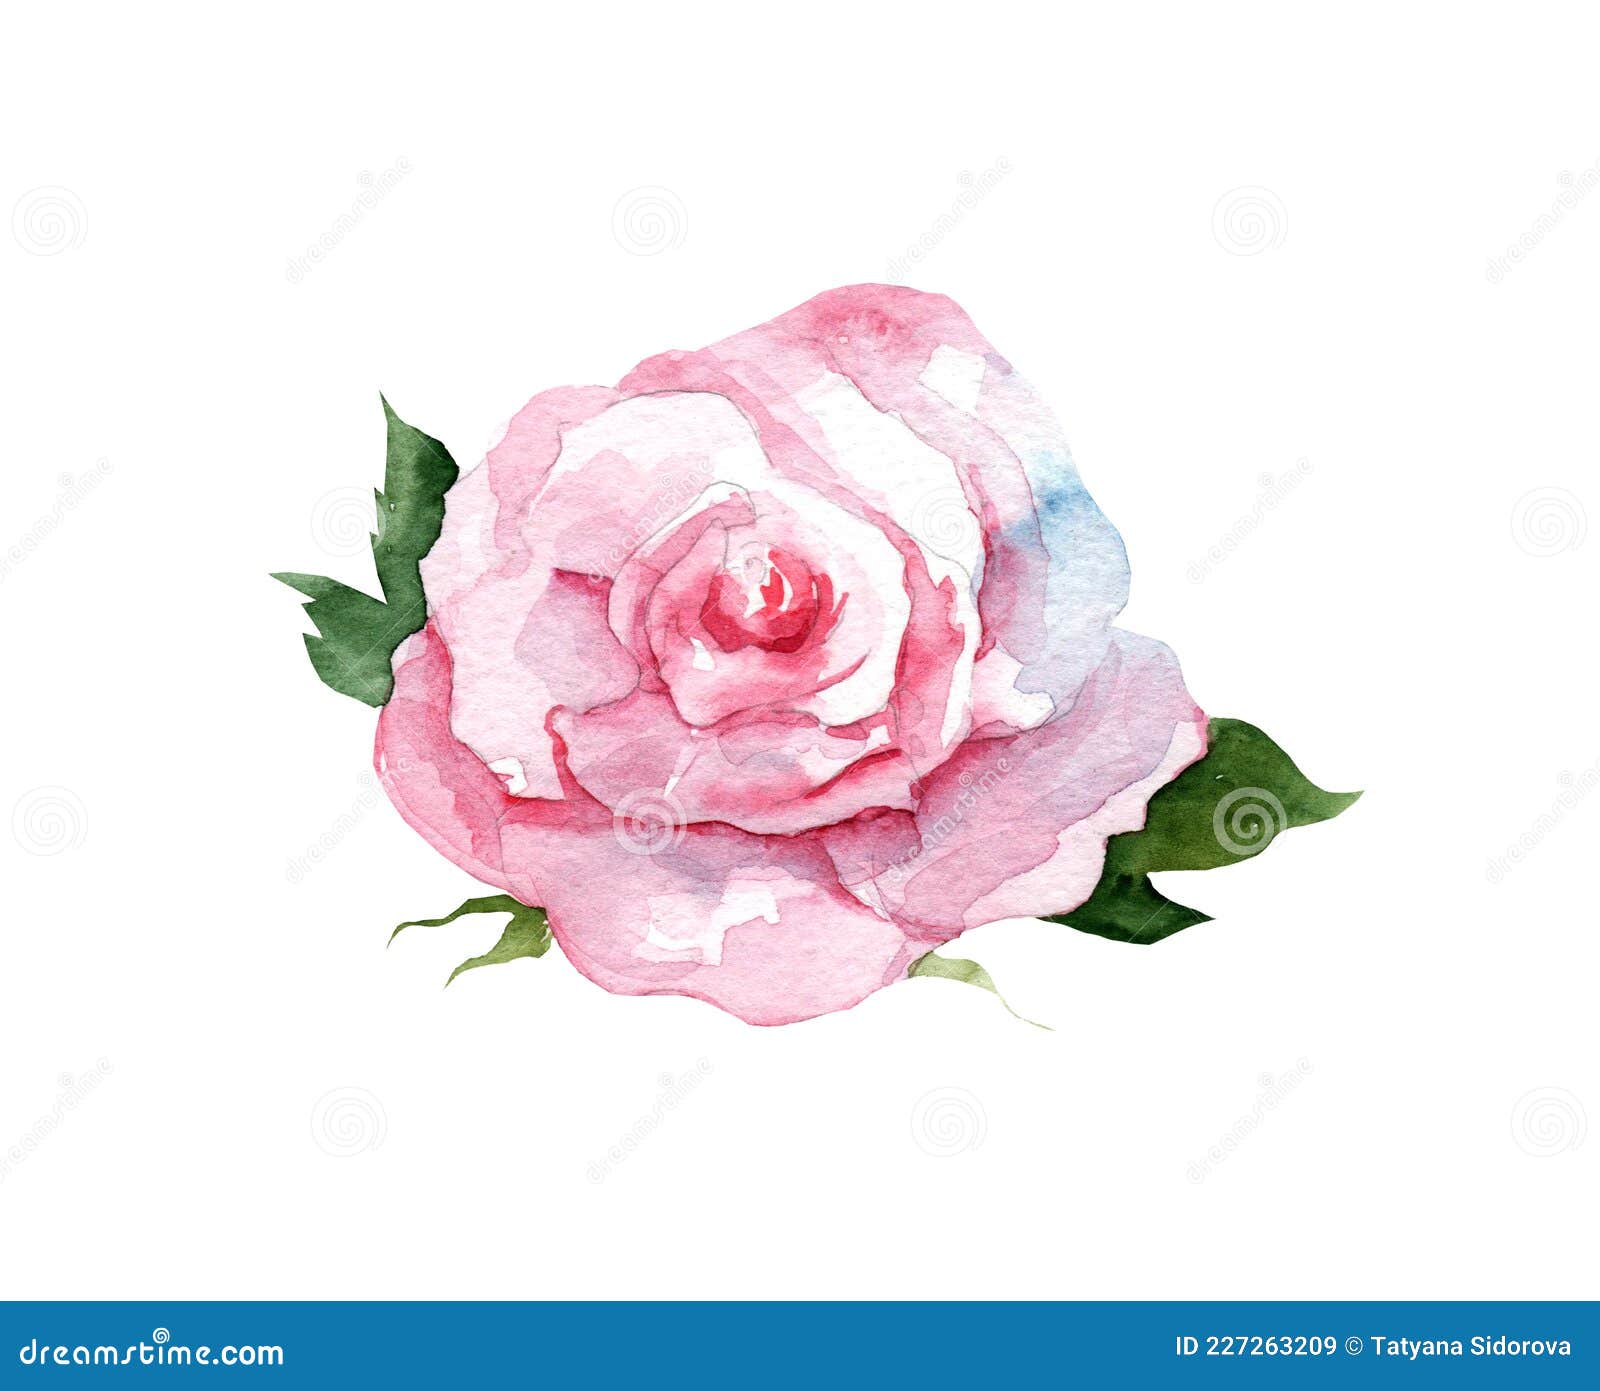 Adviento Insignificante Procesando Ilustración Acuarela De Una Rosa Rosa Rosa Con Hojas Sobre Fondo Blanco.  Botánica De Dibujo Manual. Stock de ilustración - Ilustración de  vacaciones, primer: 227263209